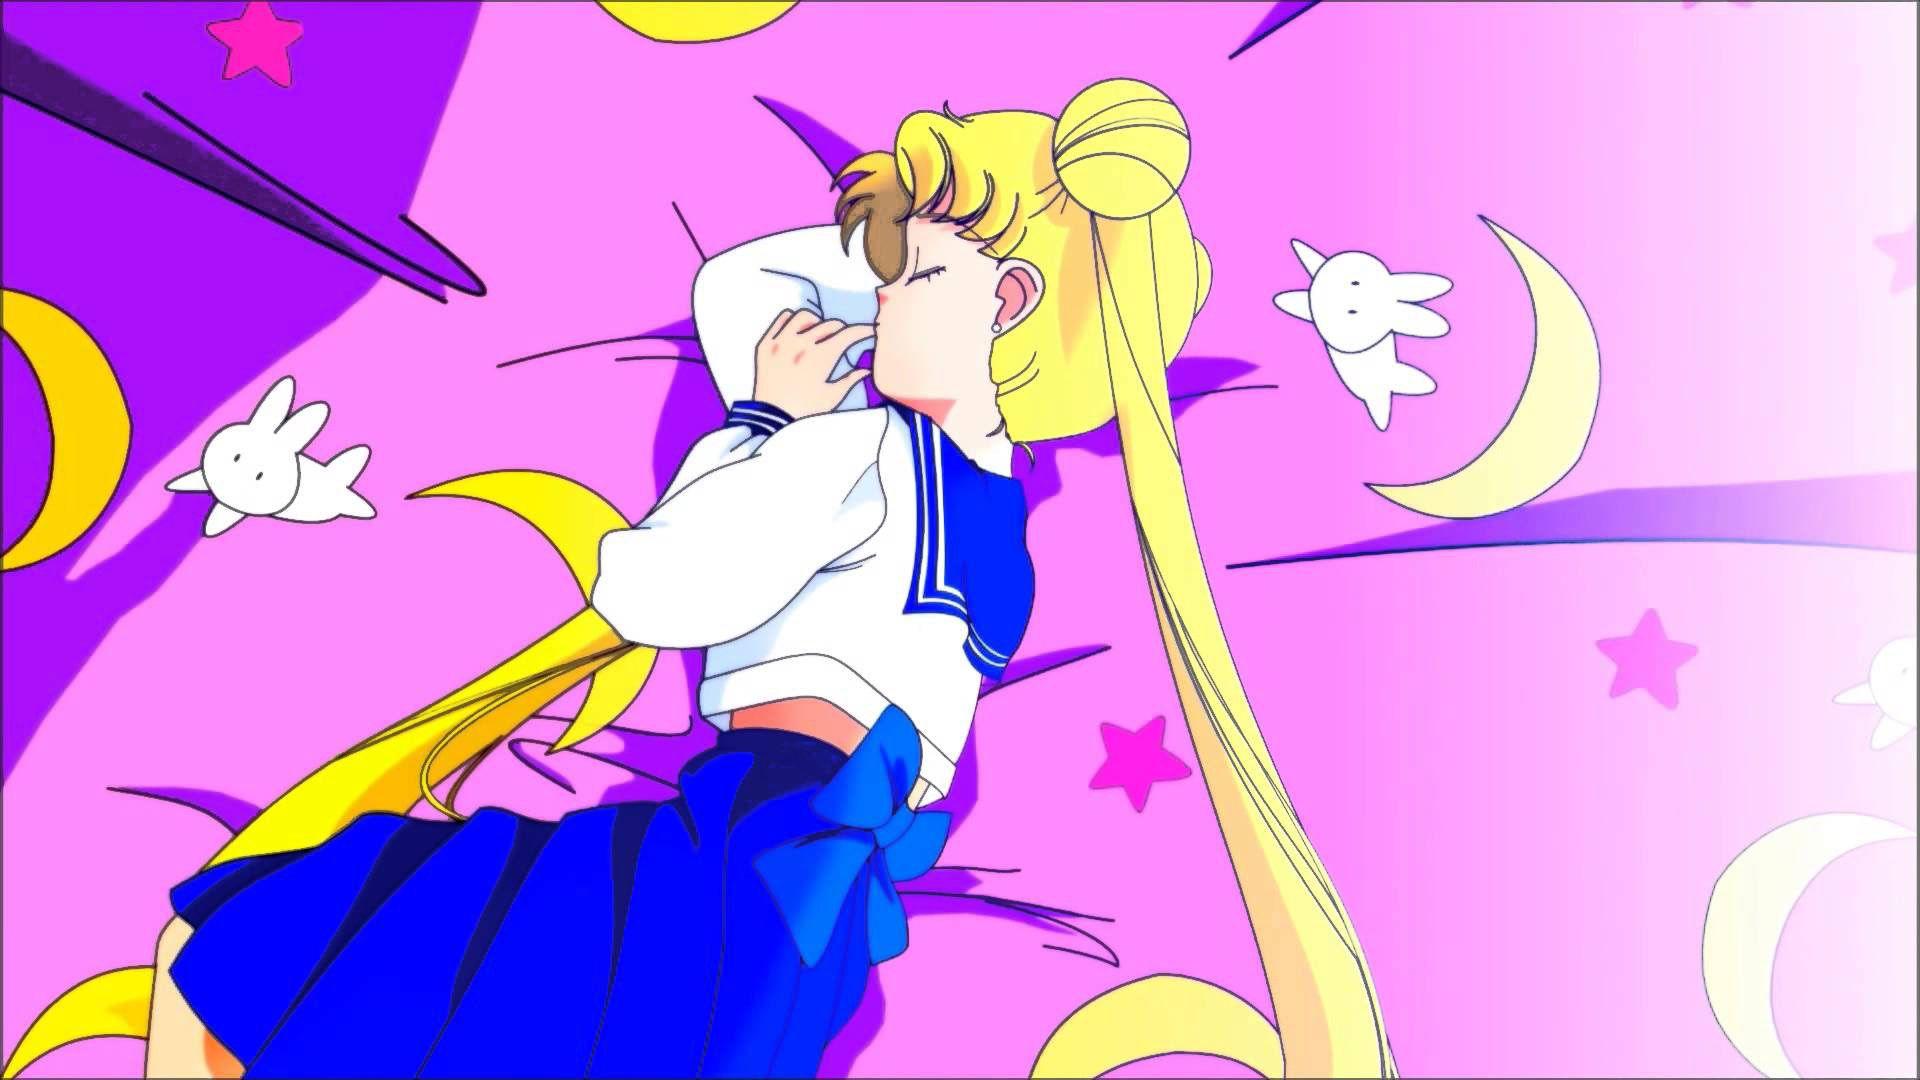 Sailor moon wallpaper Pinteres. Sailor moon aesthetic, Sailor